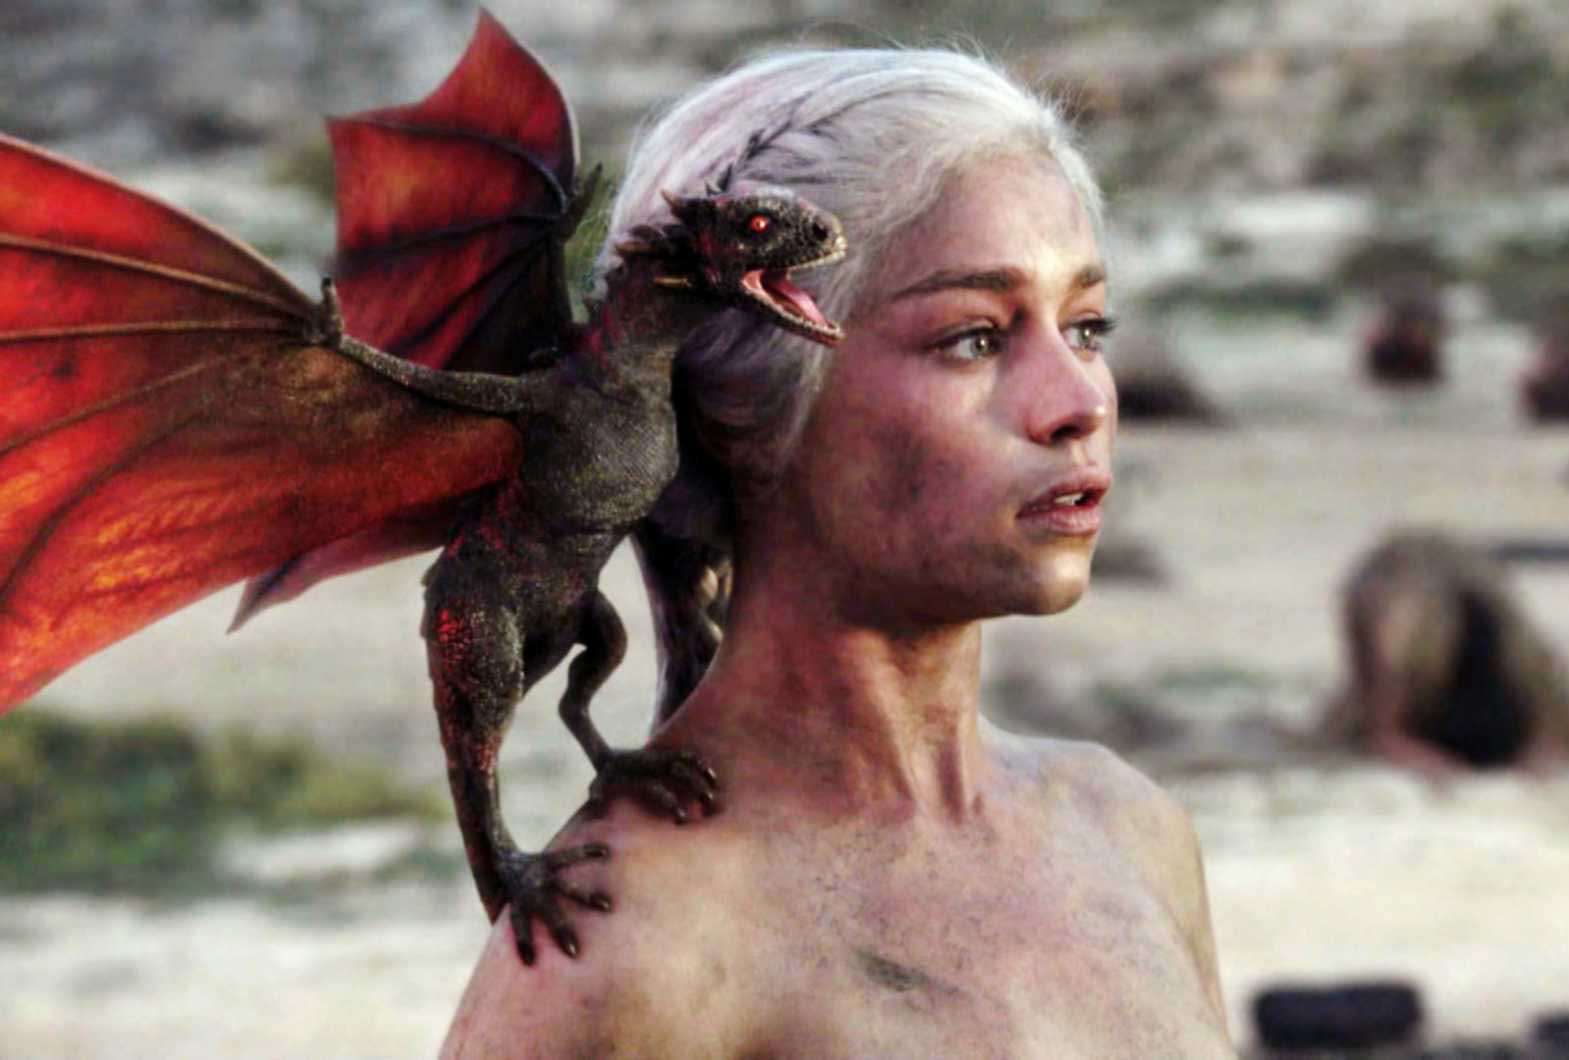 Daenerys Targaryen, Game of Thrones, de David Benioff et D. B. Weiss (2011 à 2019)